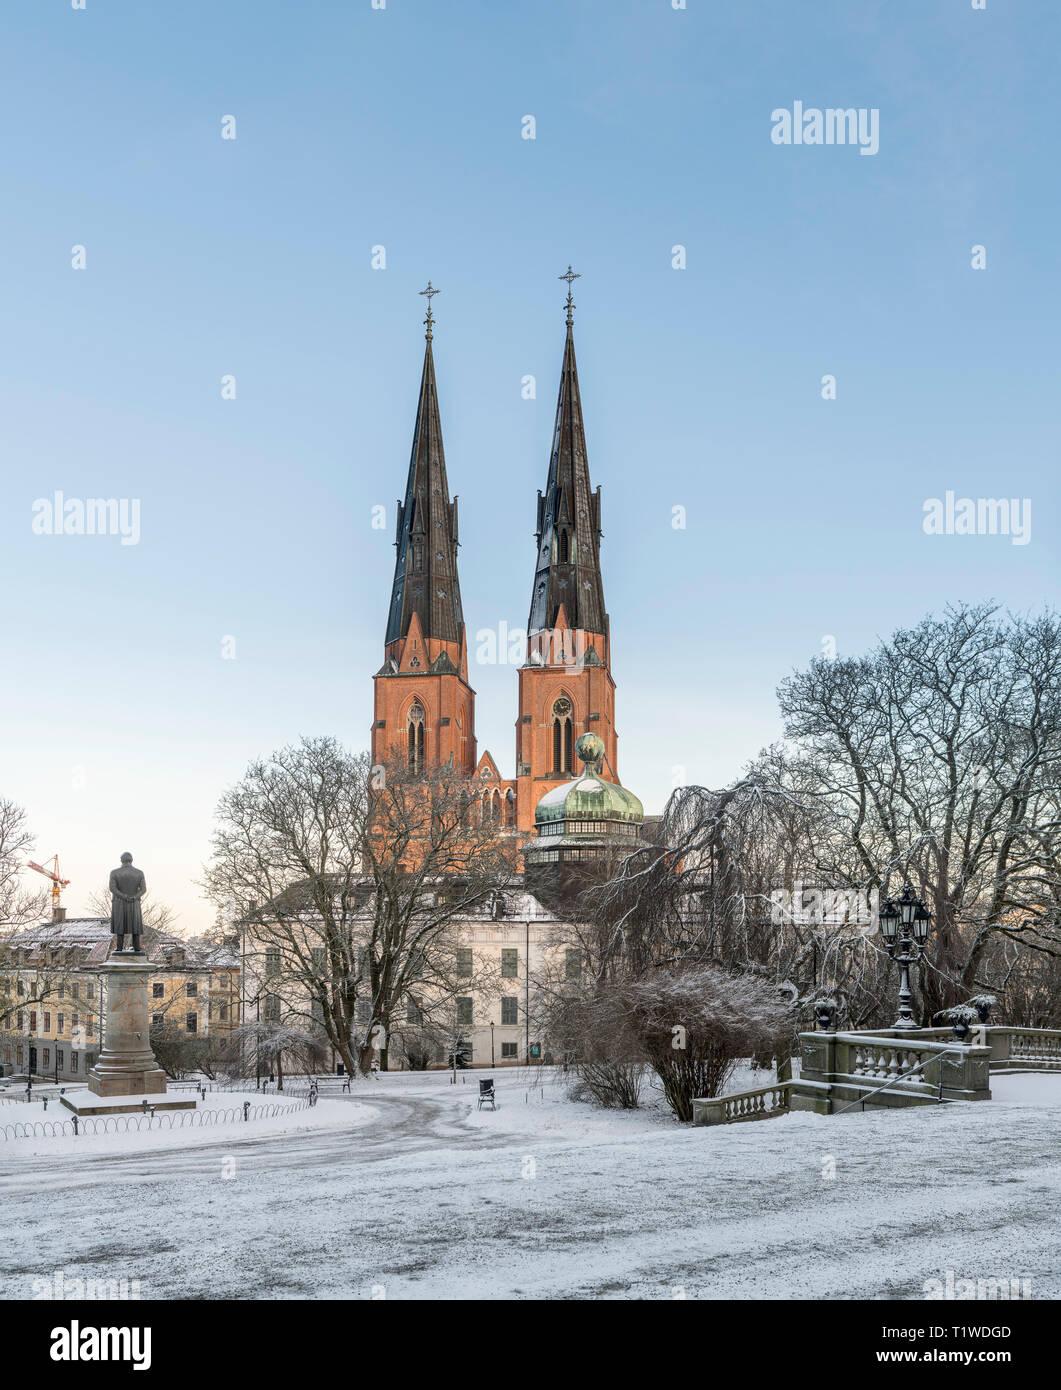 La cathédrale et le Gustavianum, la nuit, l'hiver. Vue depuis le parc de l'université, Uppsala, Suède, Scandinavie Banque D'Images